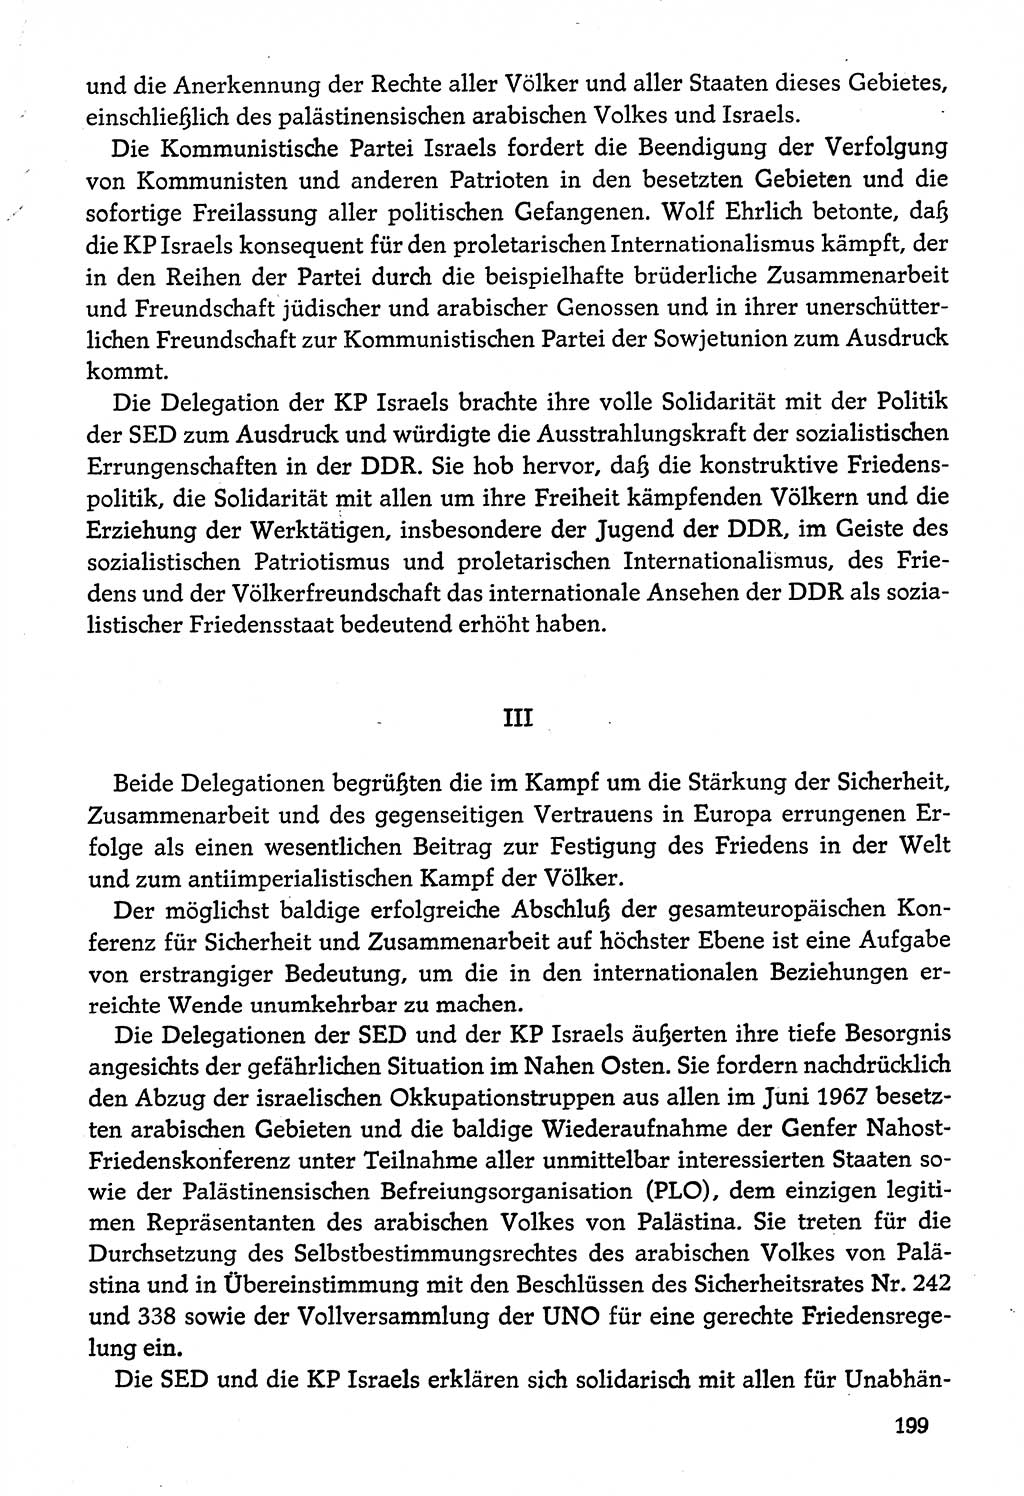 Dokumente der Sozialistischen Einheitspartei Deutschlands (SED) [Deutsche Demokratische Republik (DDR)] 1974-1975, Seite 199 (Dok. SED DDR 1978, Bd. ⅩⅤ, S. 199)